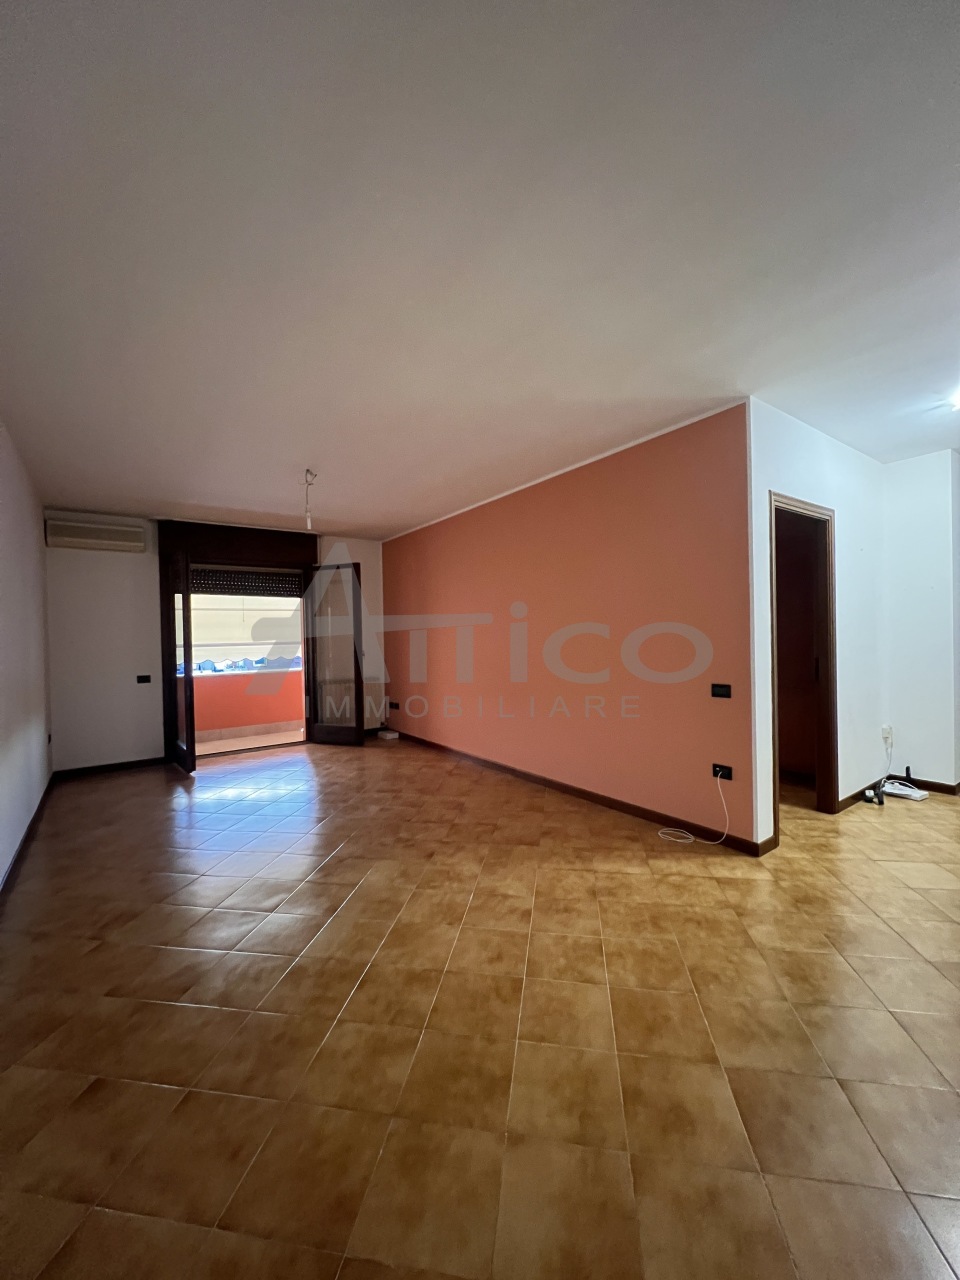 Appartamento in vendita a Rovigo, 6 locali, prezzo € 120.000 | PortaleAgenzieImmobiliari.it